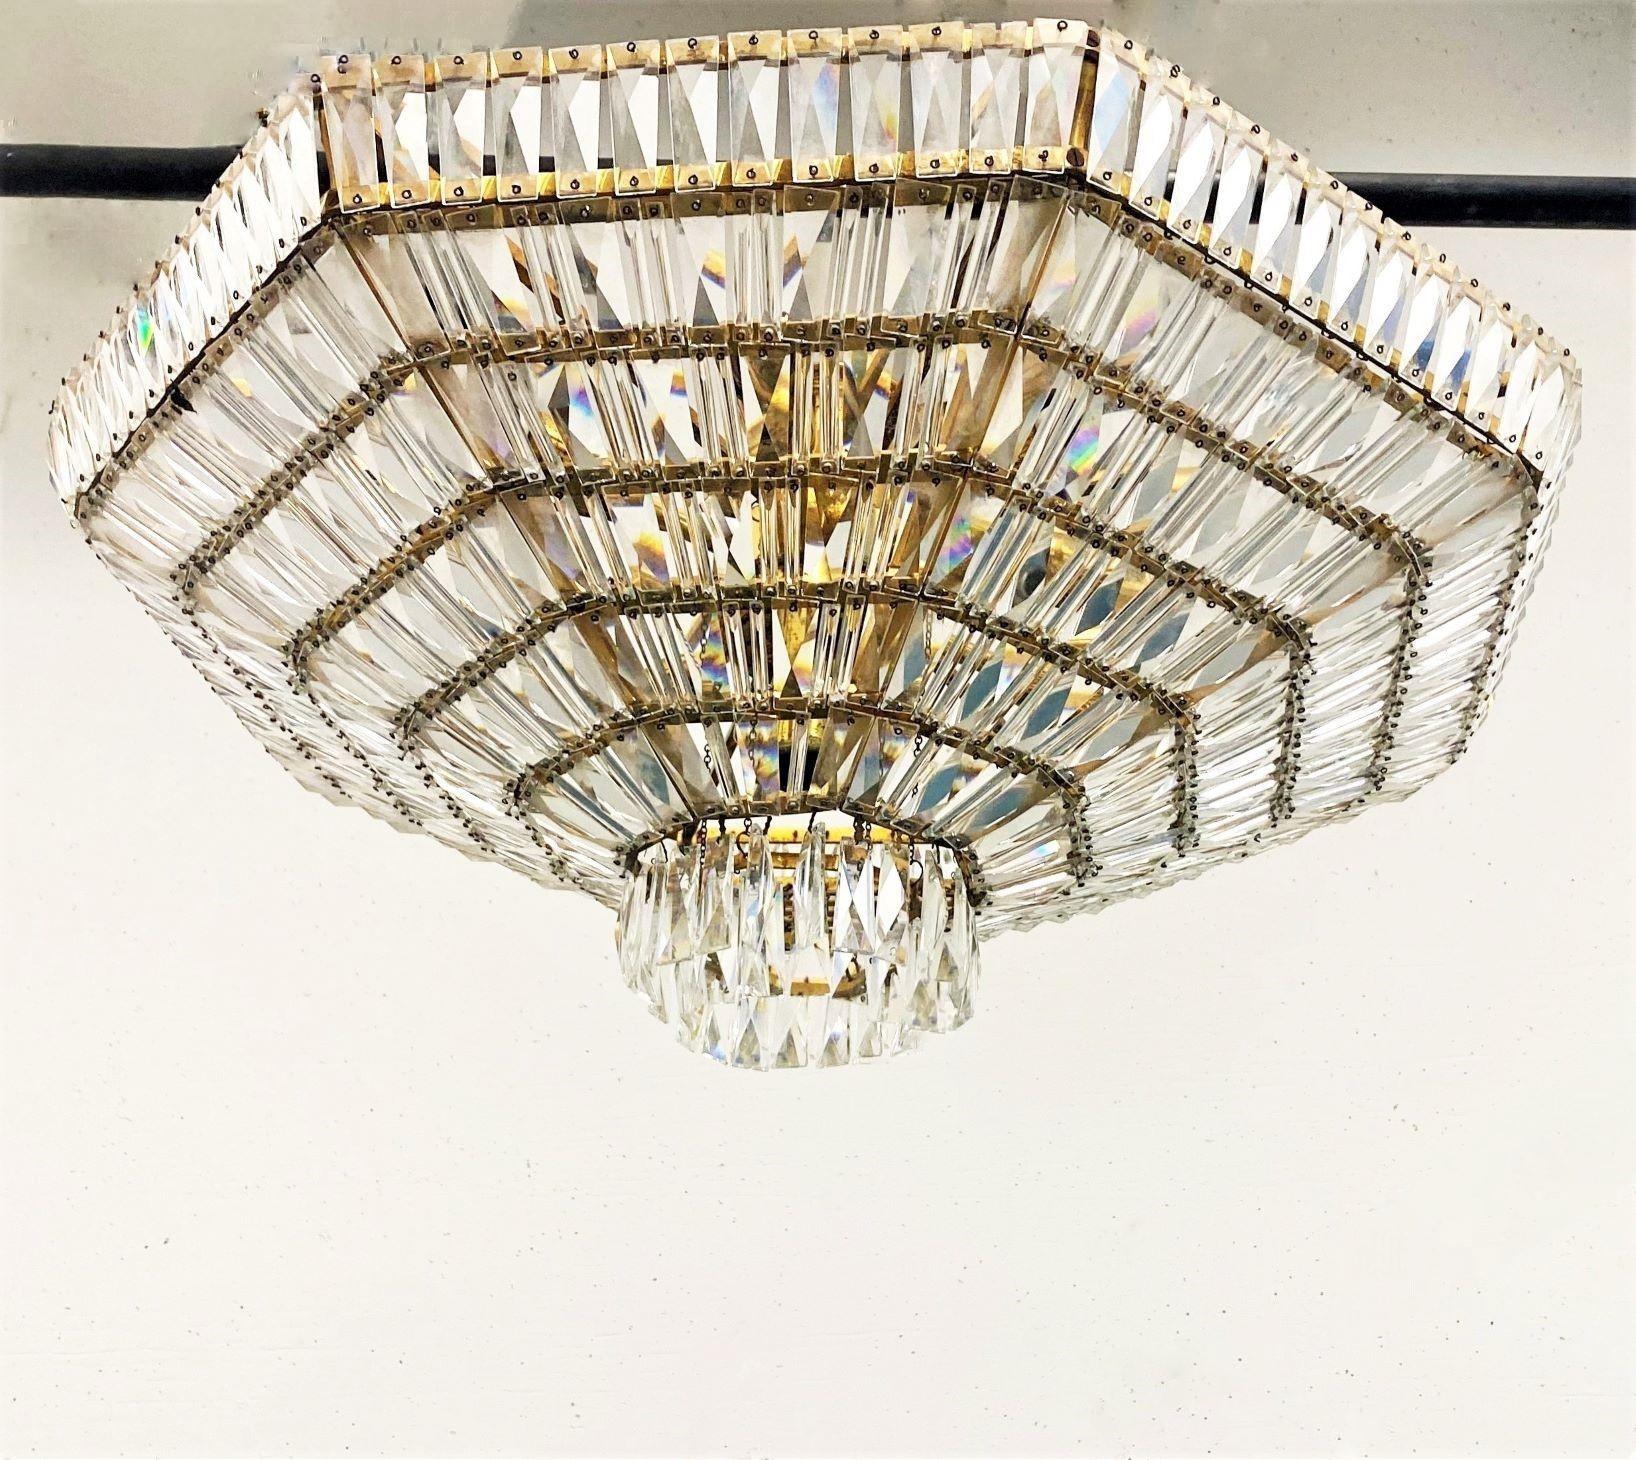 Grand luminaire encastré ou plafonnier à neuf lumières de style Hollywood-Regency, Autriche, années 1960. Fabriqué à la main en cristaux Swarovski et laiton formant une forme de diamant, six étages fixes avec des cristaux facettés taillés à la main